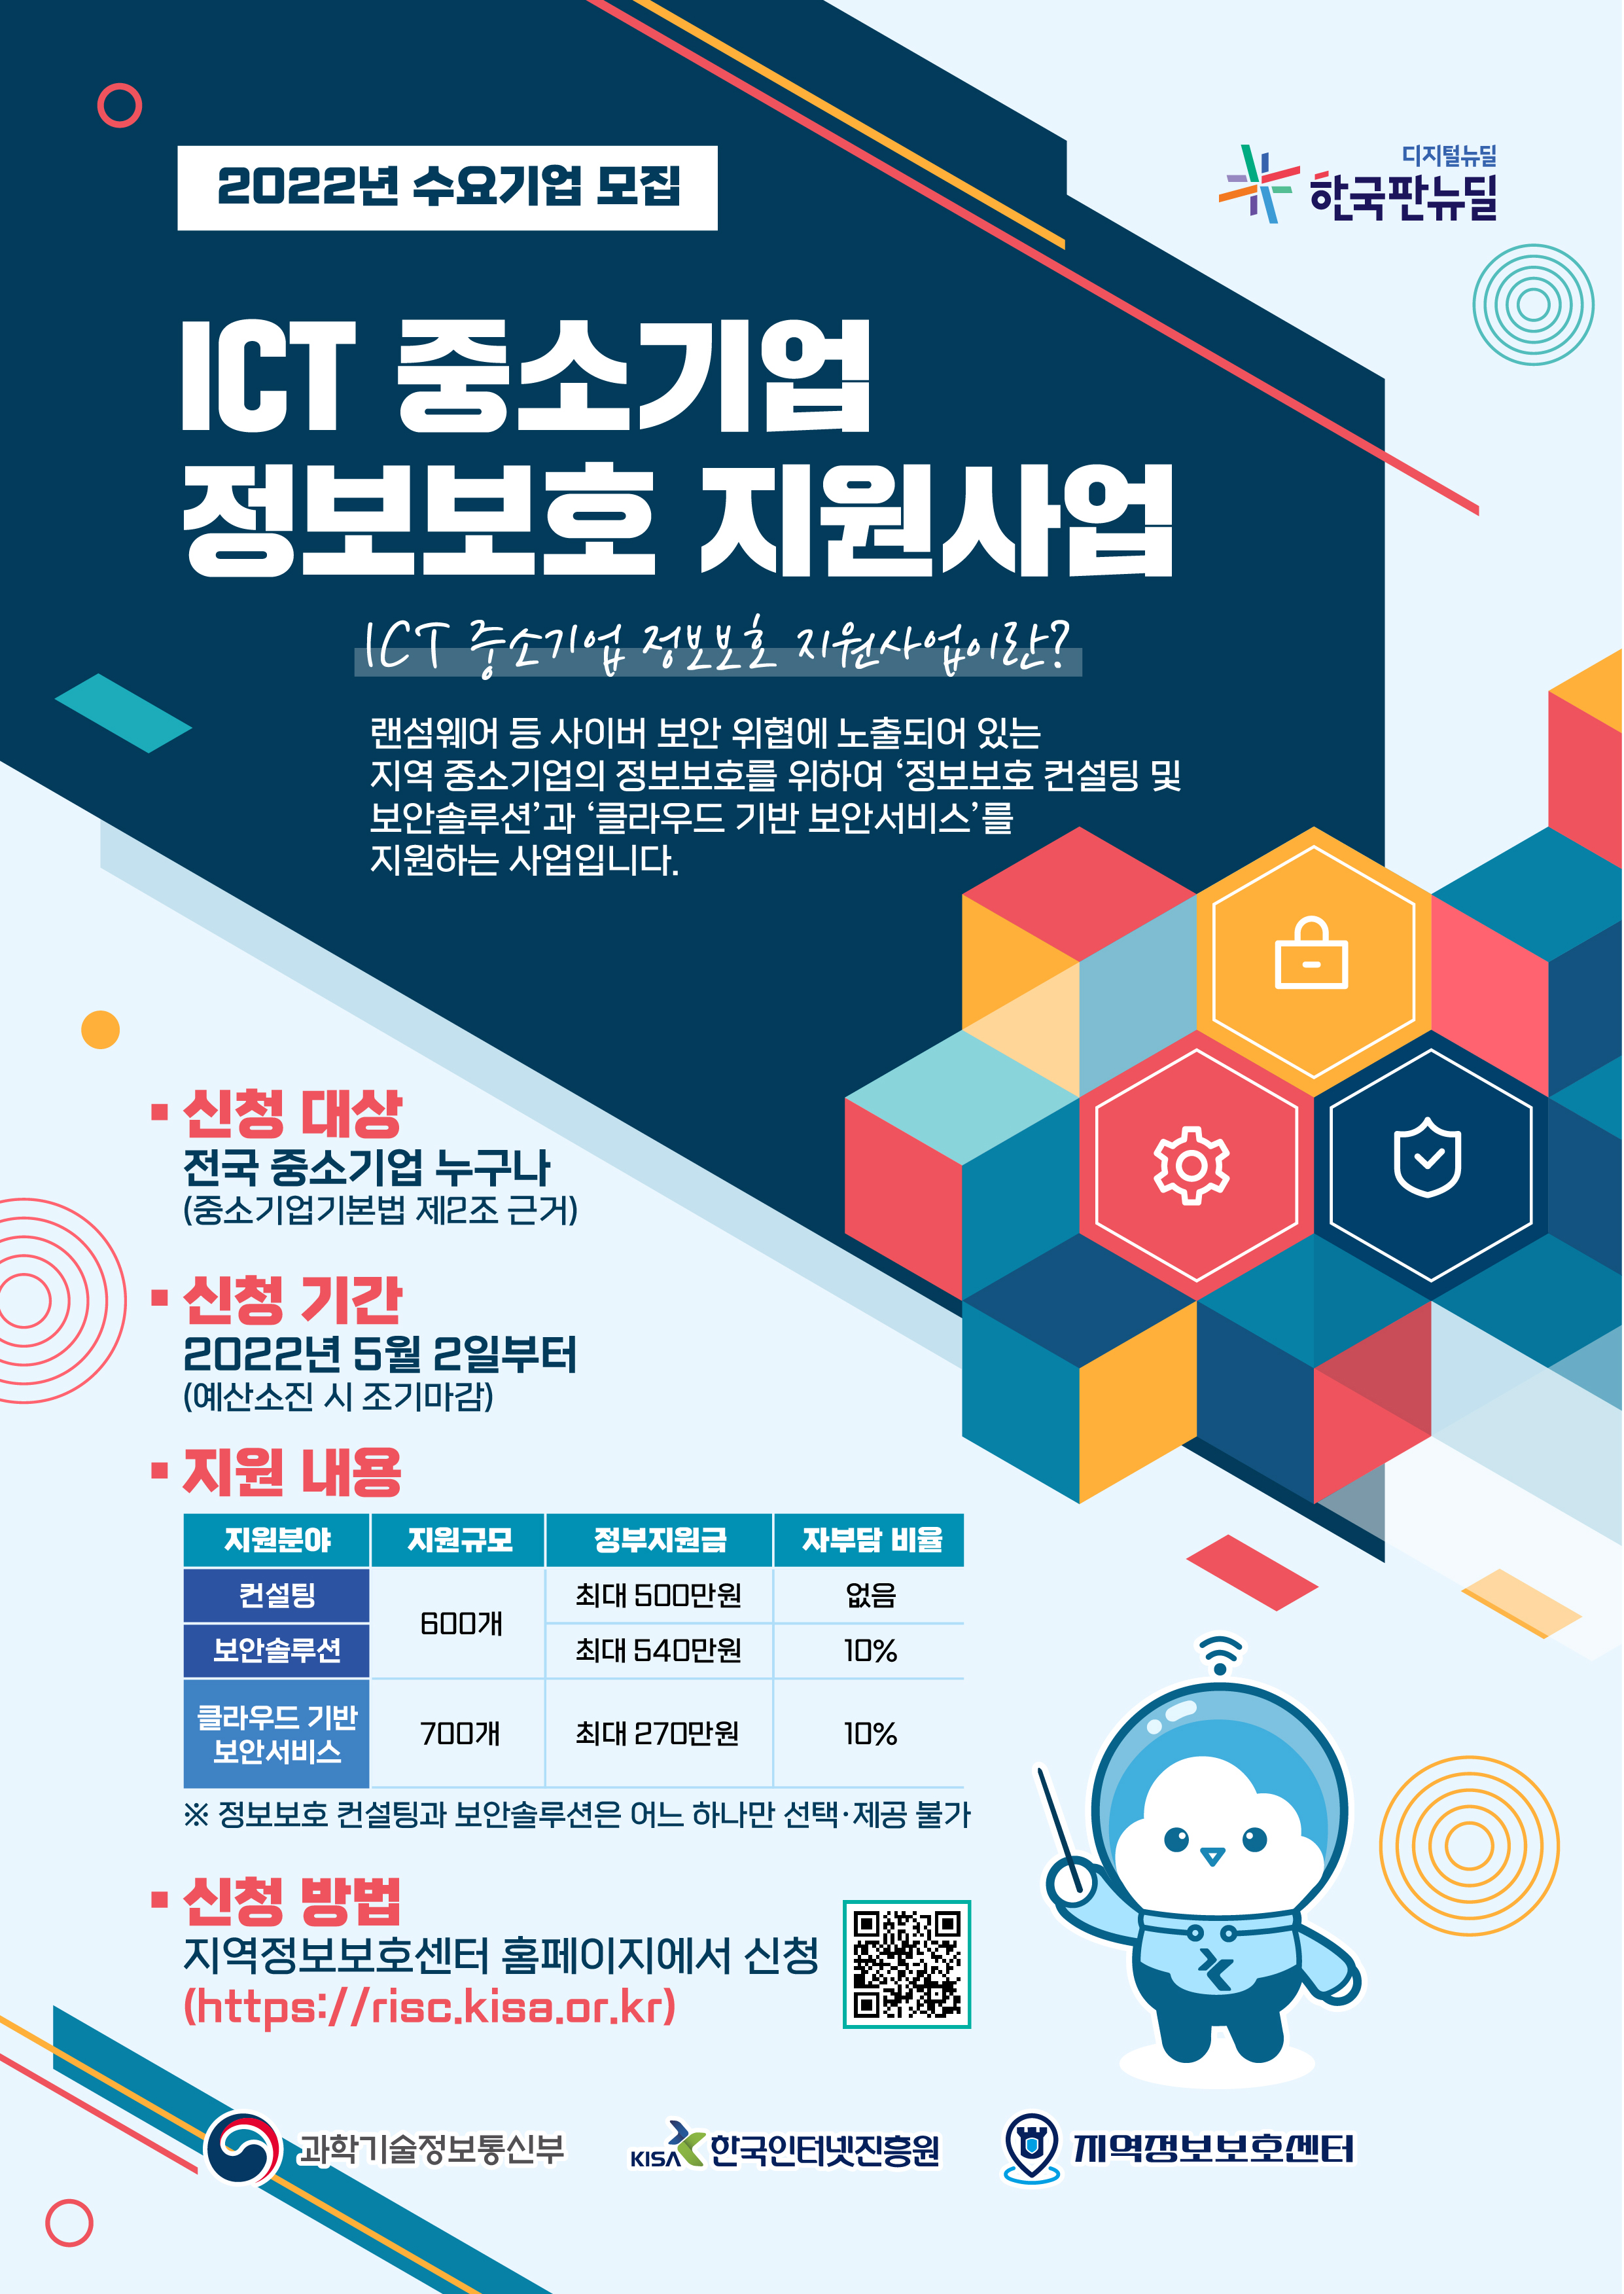 ICT 중소기업 정보보호 지원사업 수요기업 모집 포스터